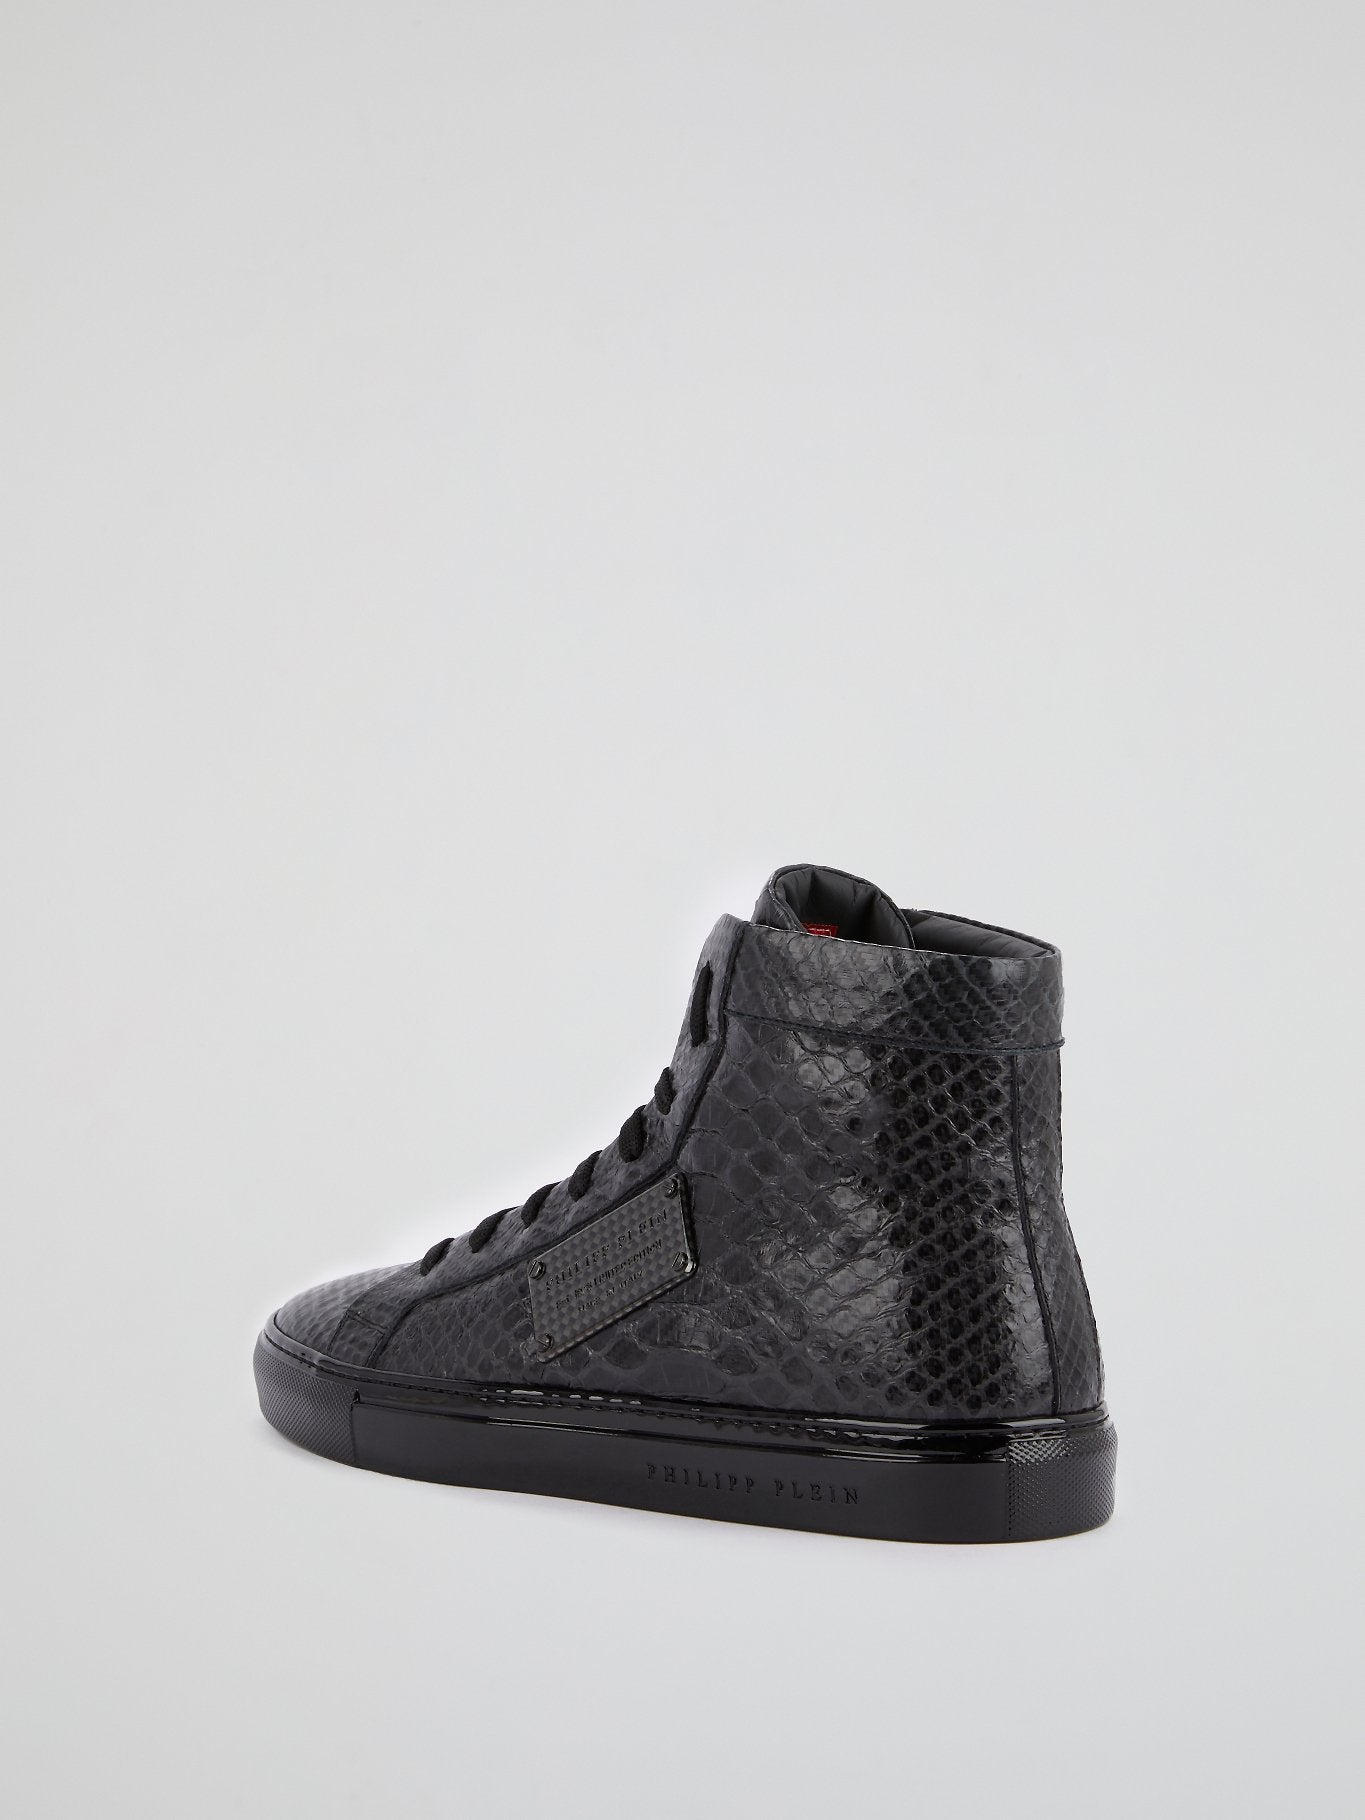 Black High Top Reptile Sneakers